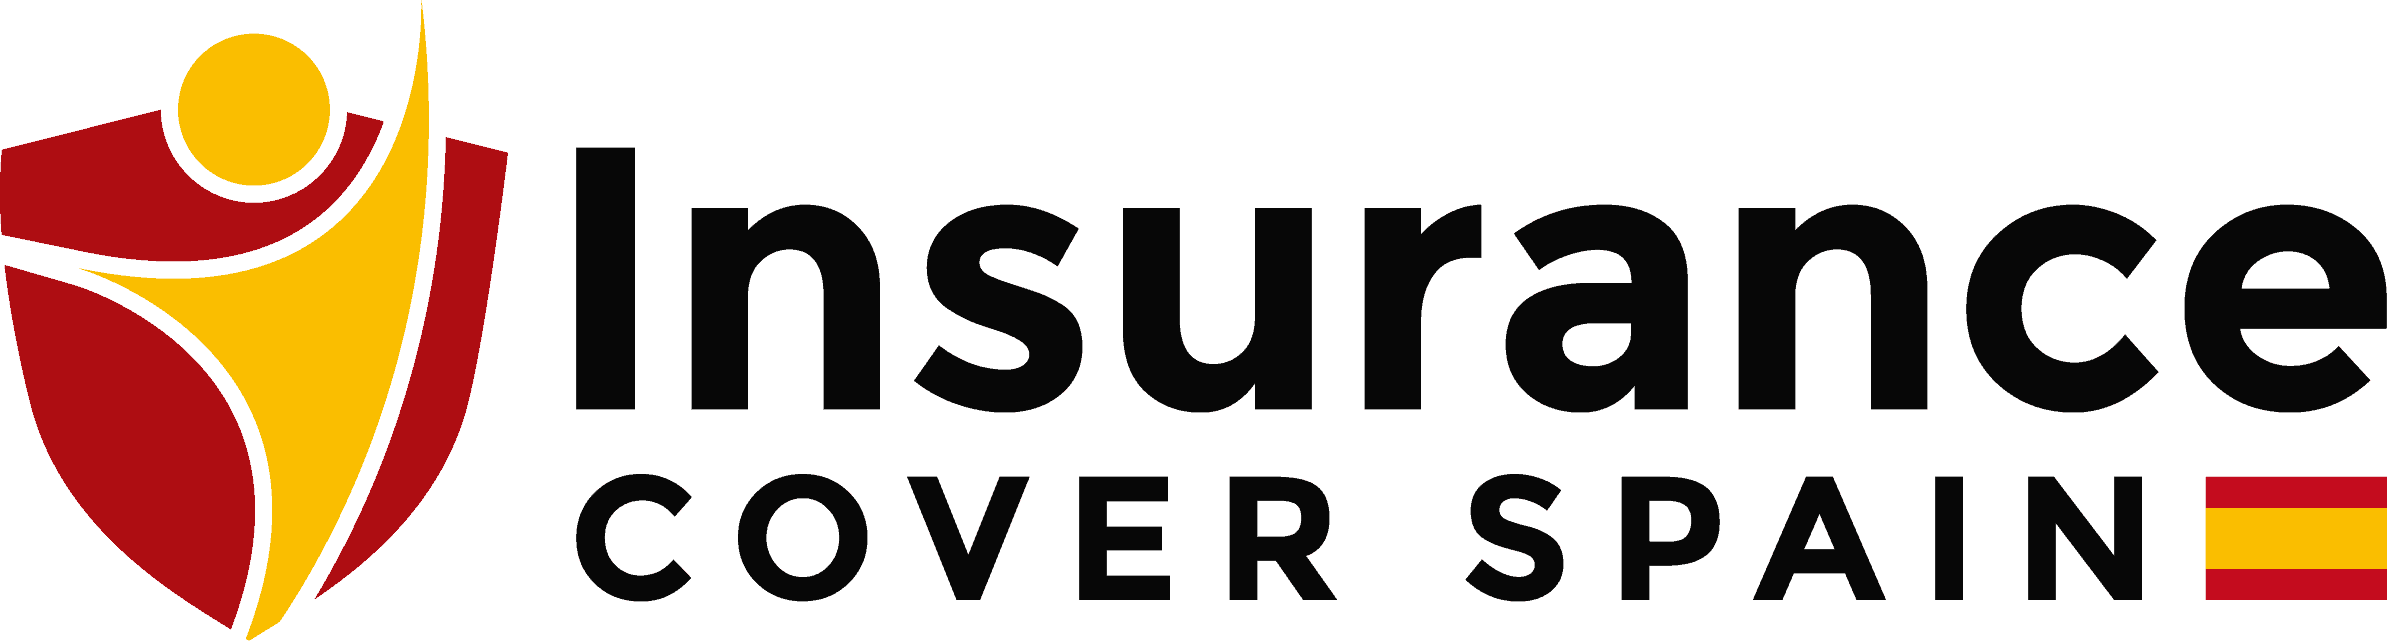 Insurance Cover Spain logo